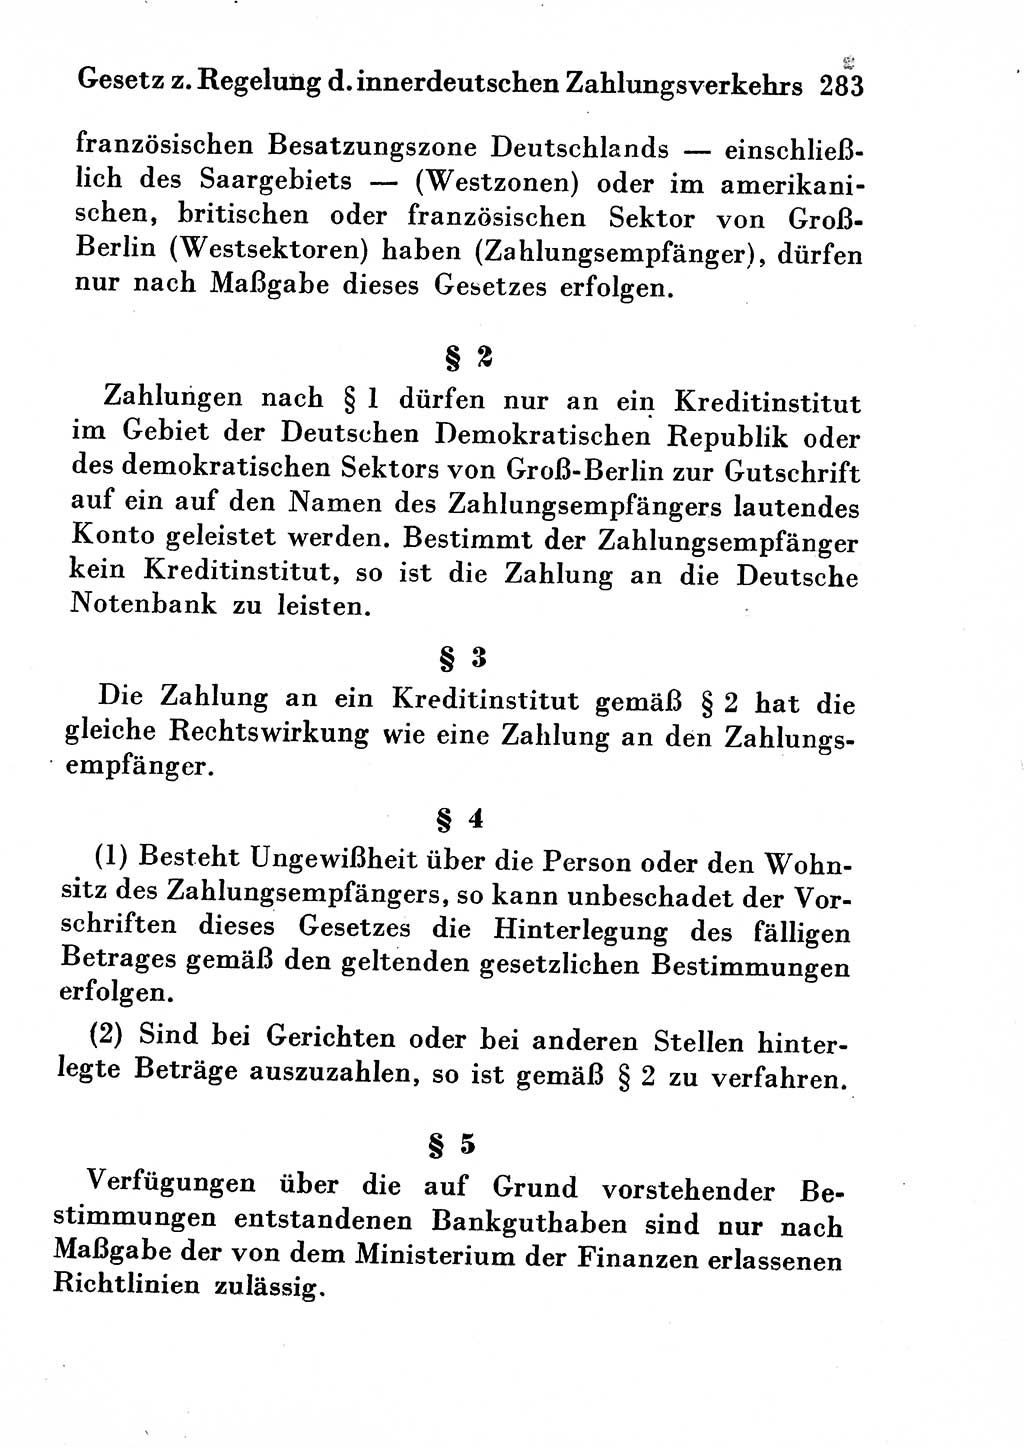 Strafgesetzbuch (StGB) und andere Strafgesetze [Deutsche Demokratische Republik (DDR)] 1954, Seite 283 (StGB Strafges. DDR 1954, S. 283)